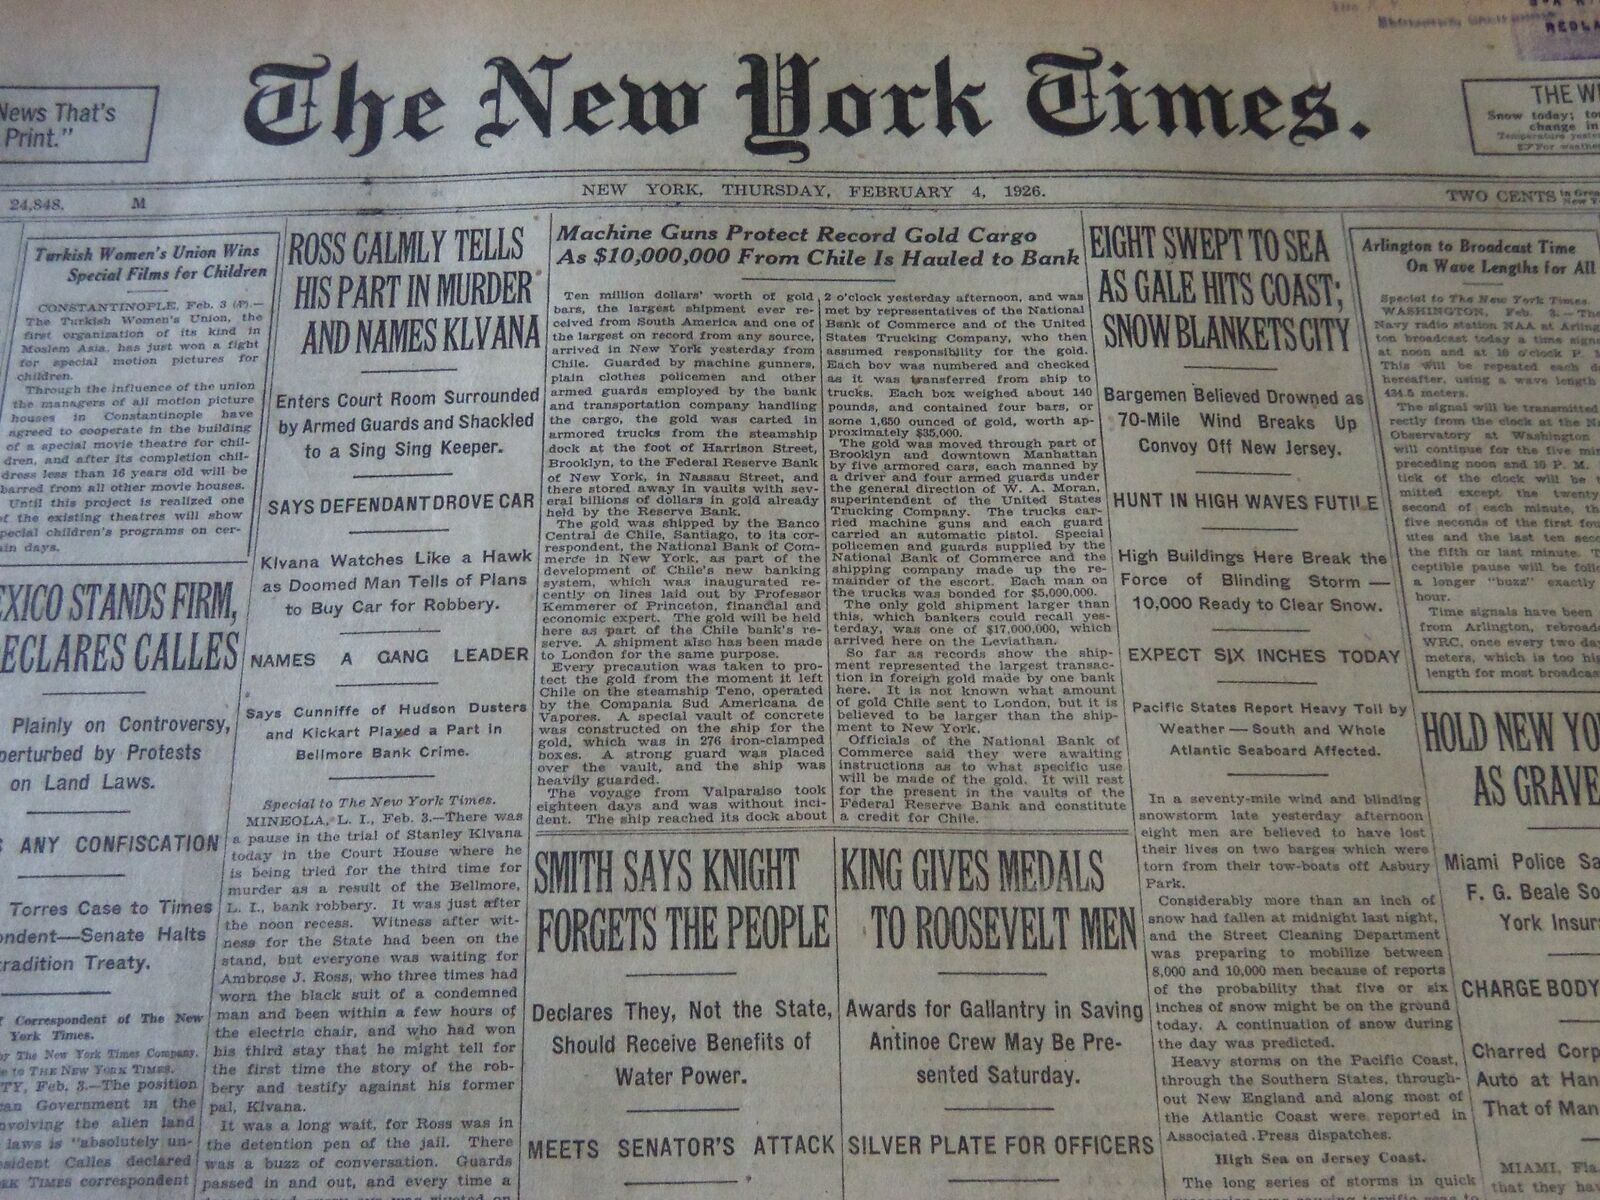 1926 FEB 4 NEW YORK TIMES - ROSS TELLS PART IN MURDER & NAMES KLVANA - NT 6611